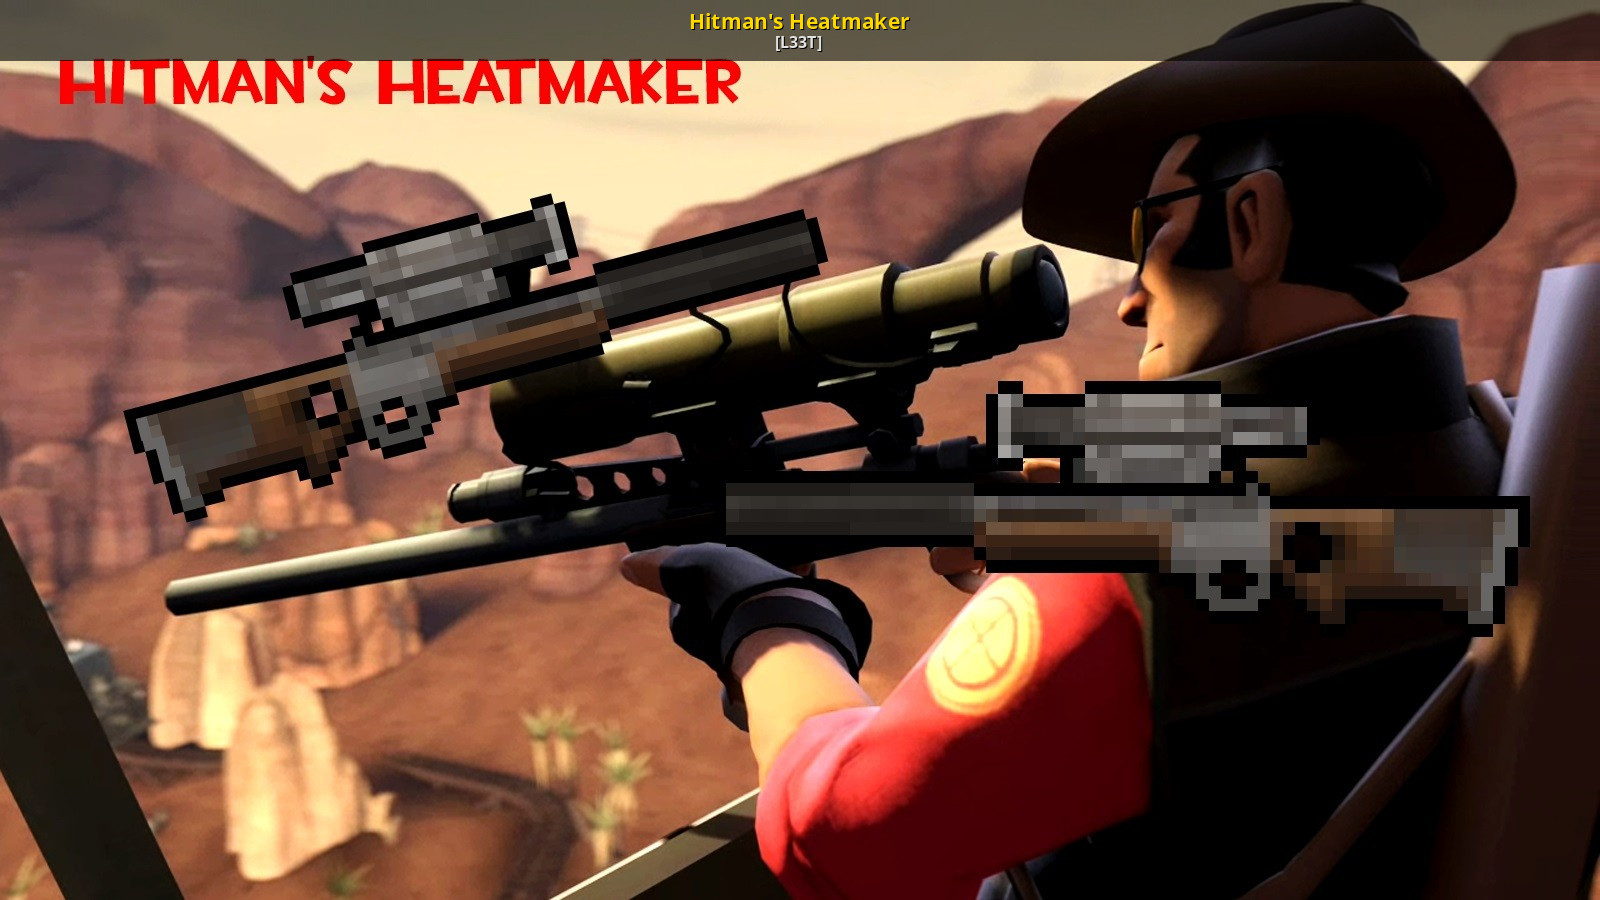 Игровые сервера кс2. Hitman Heatmaker. The Hitman's Heatmaker tf2 Pixel. The Hitman's Heatmaker tf2 Pixel Art. Sniper clips Nintendo.